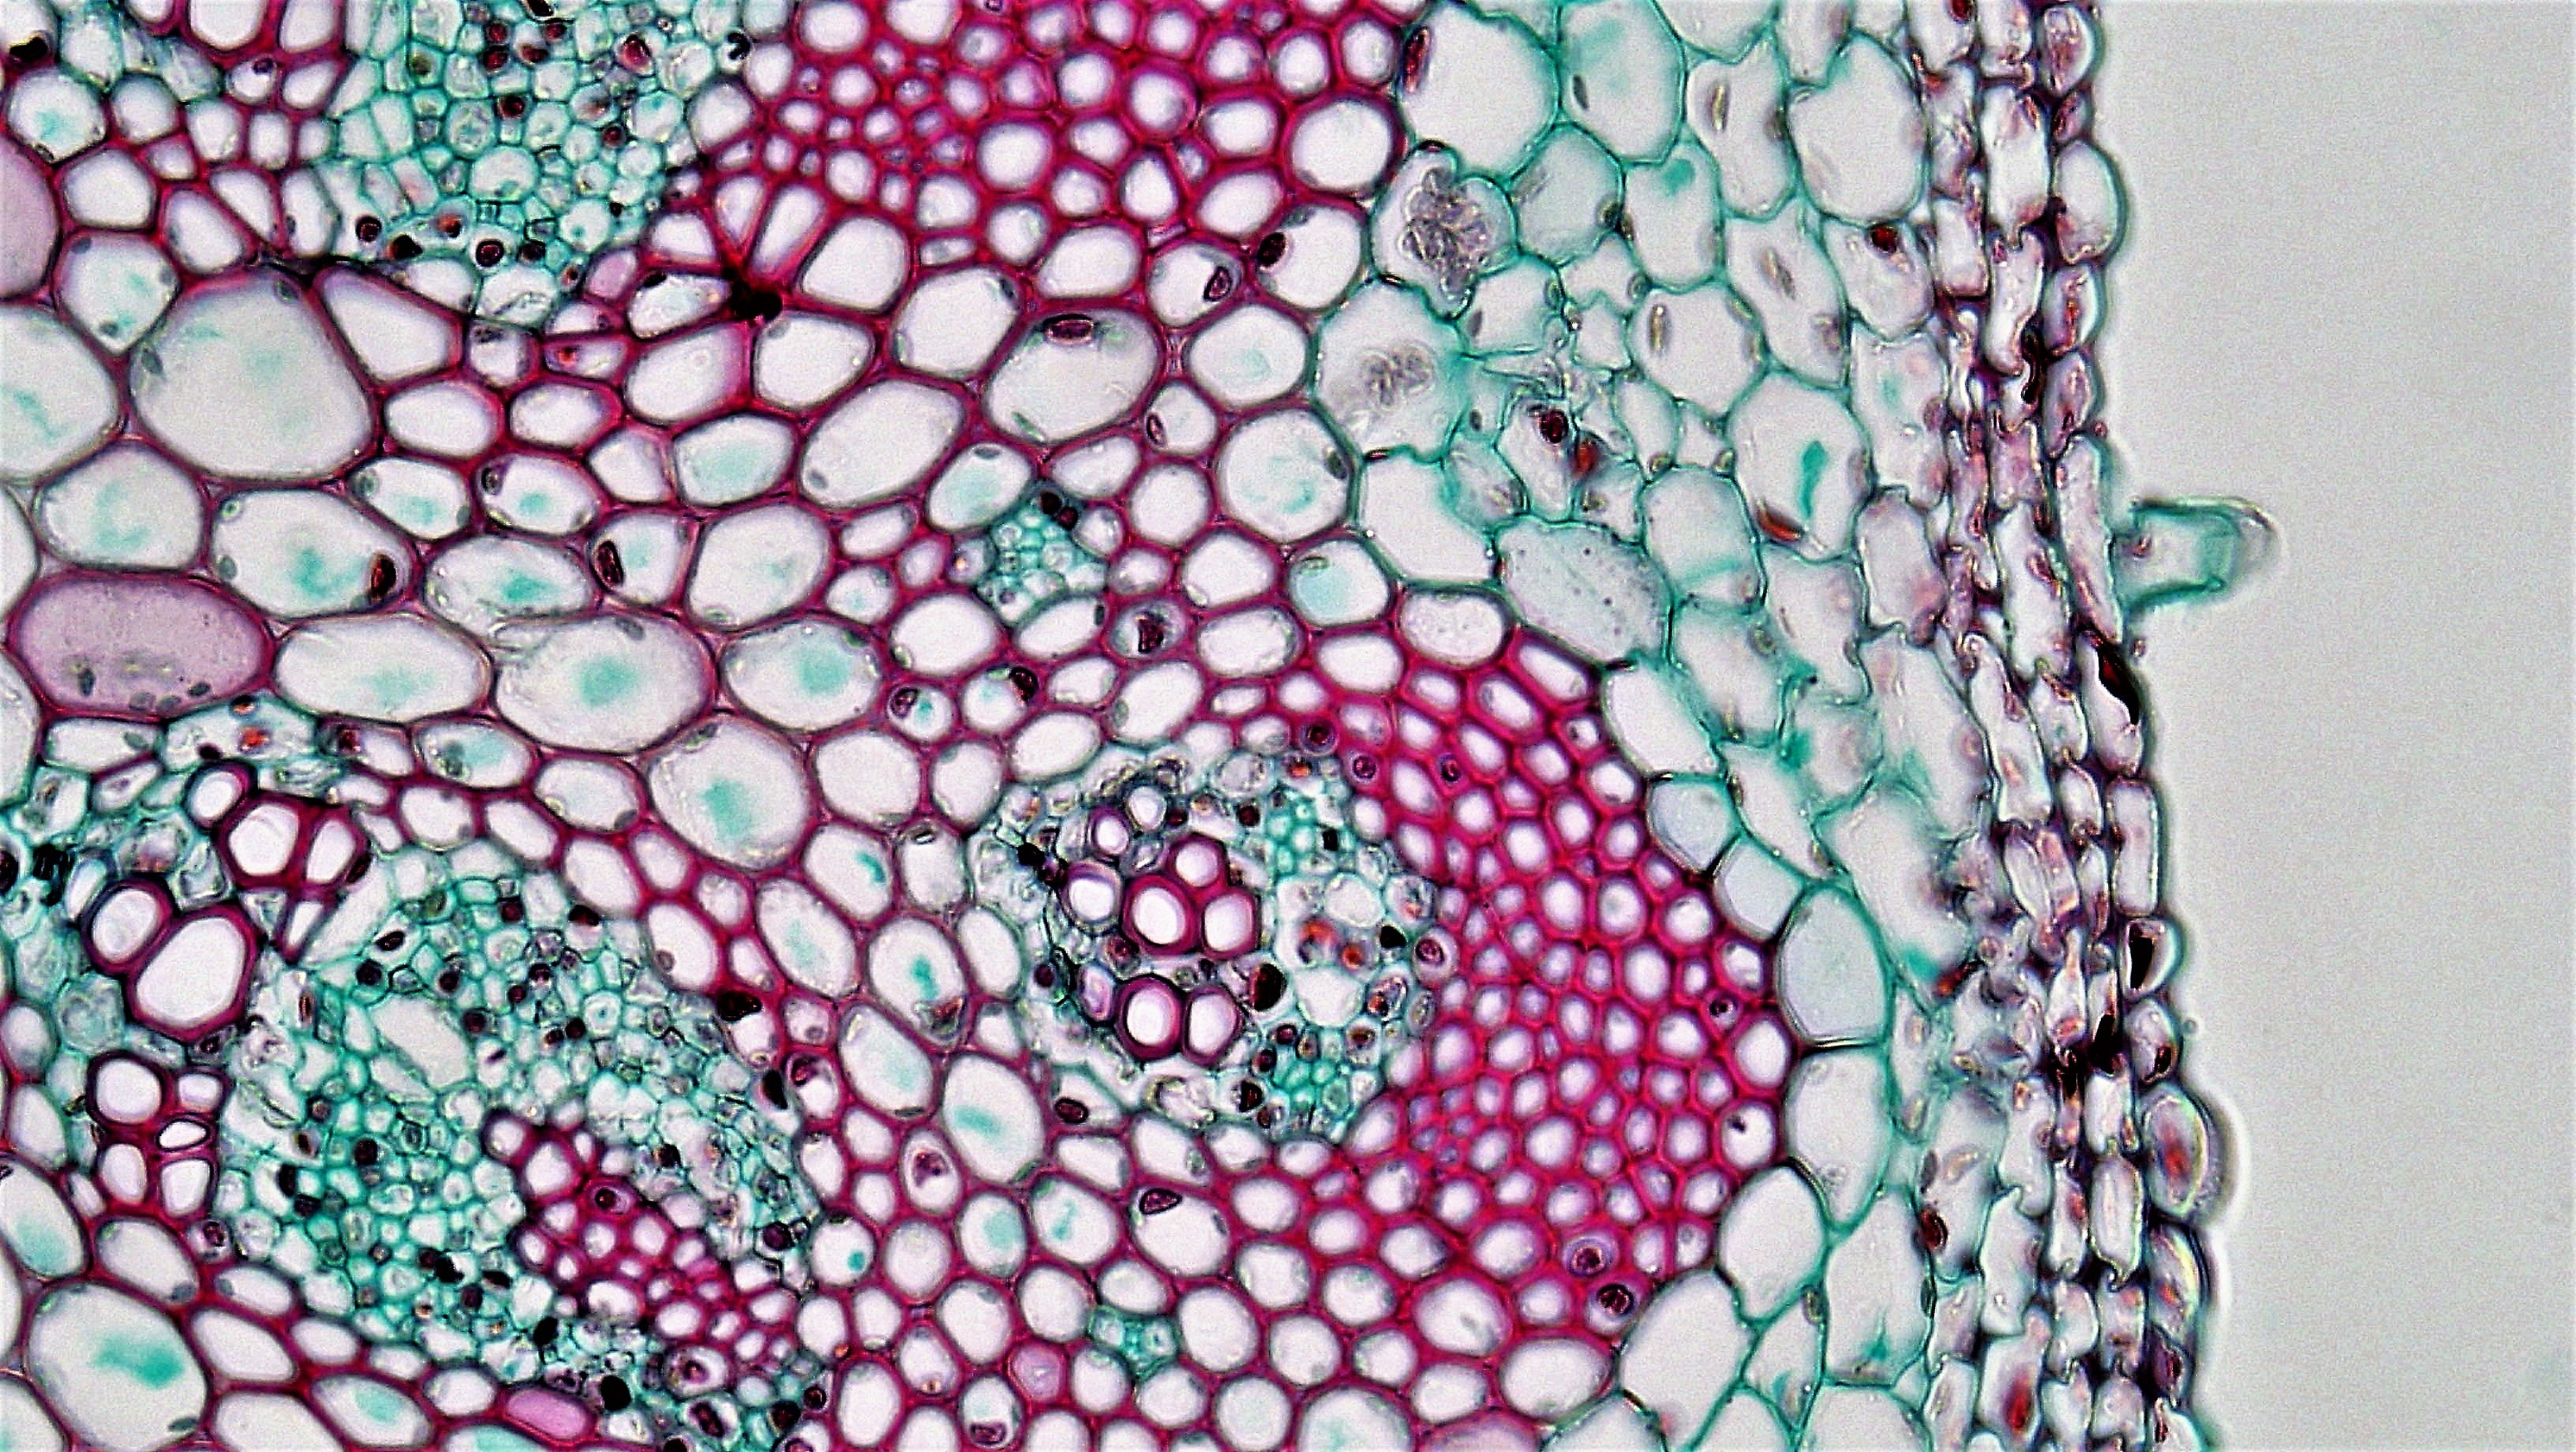 Срезы тканей под микроскопом